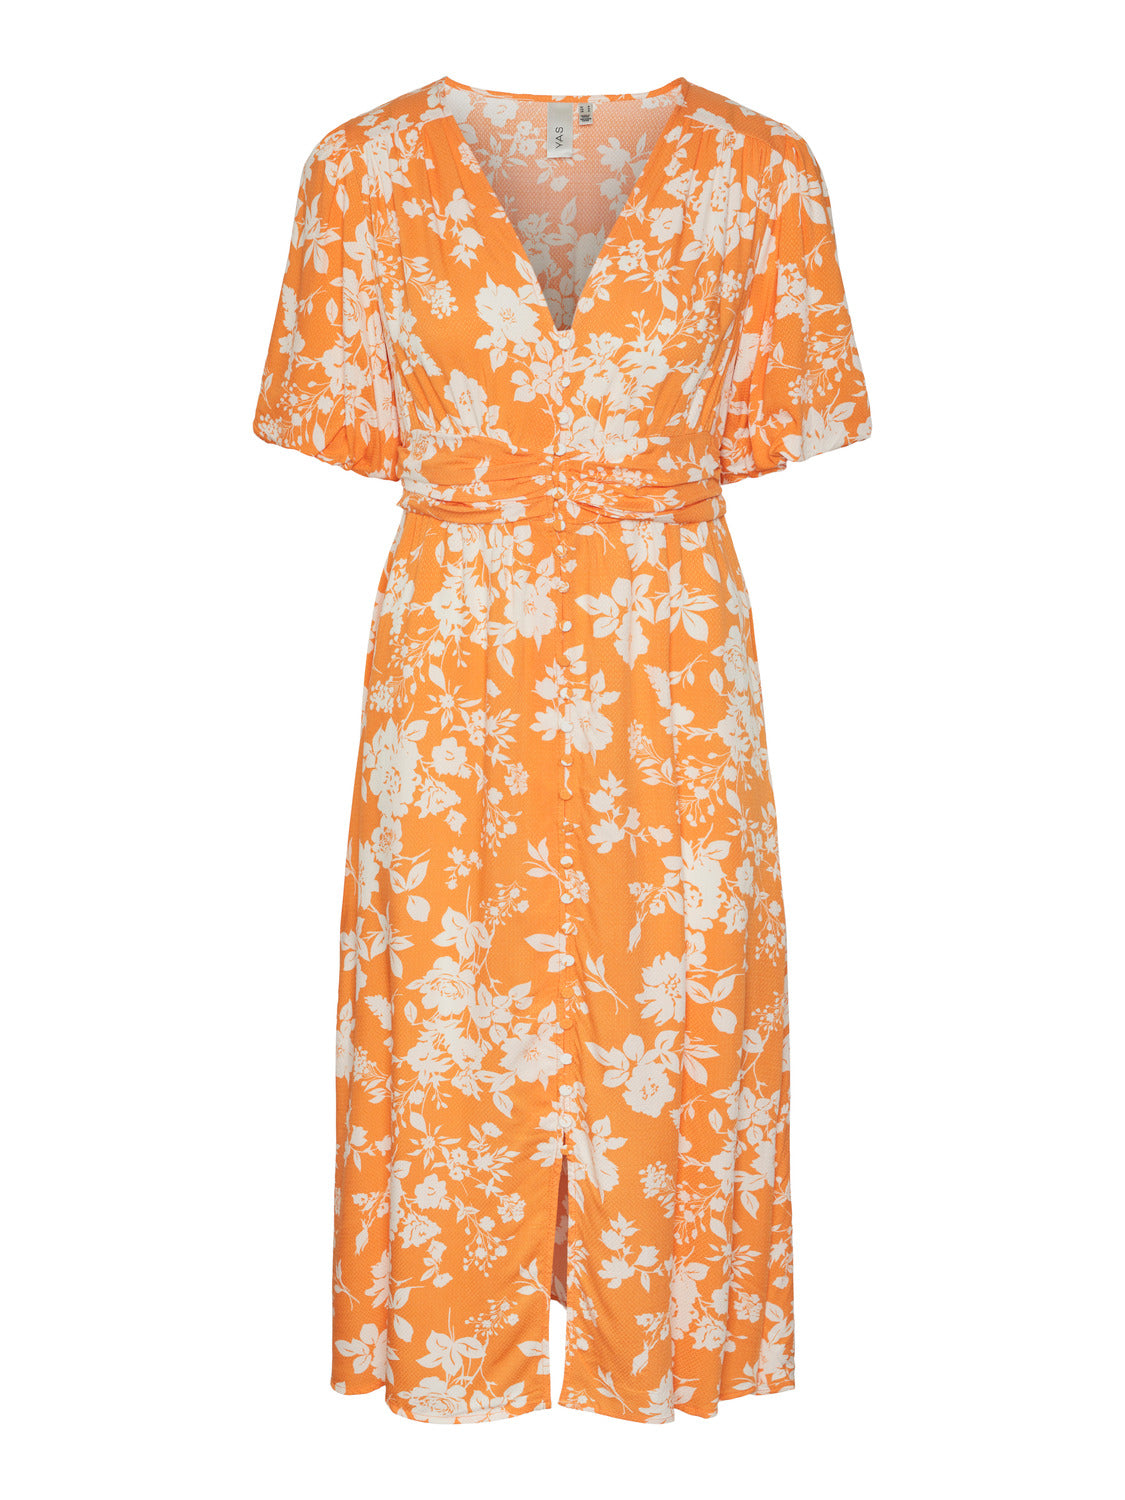 YASANNA Dress - Sun Orange